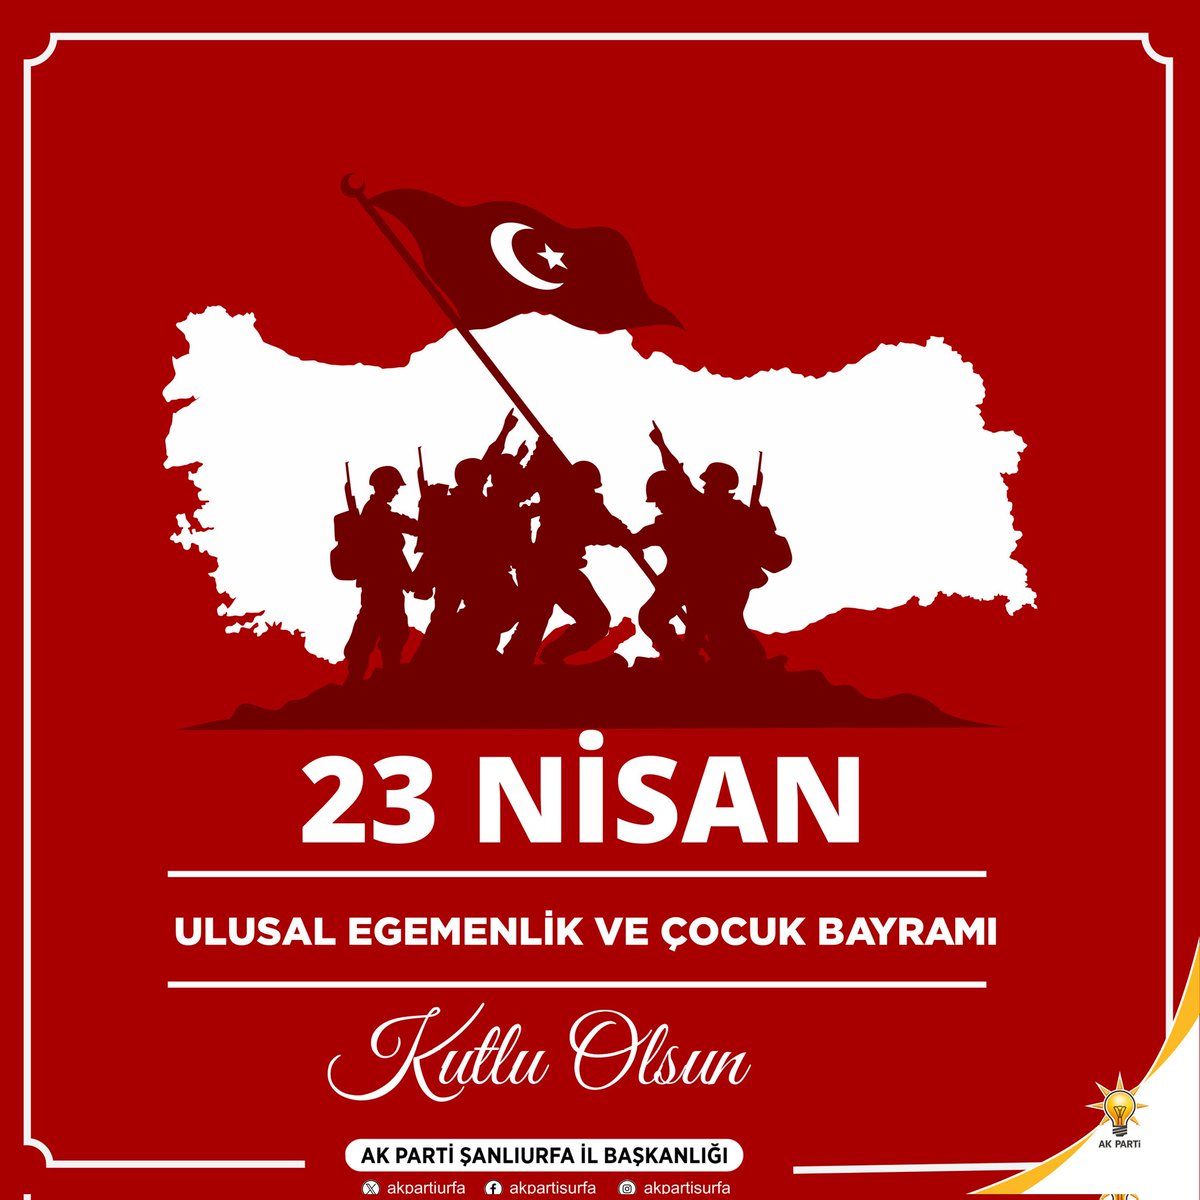 23 Nisan Ulusal Egemenlik ve Çocuk Bayramı’nı kutlar, daima huzurlu, müreffeh yarınlar temenni ederiz. #23Nisan #23NisanKutluOlsun